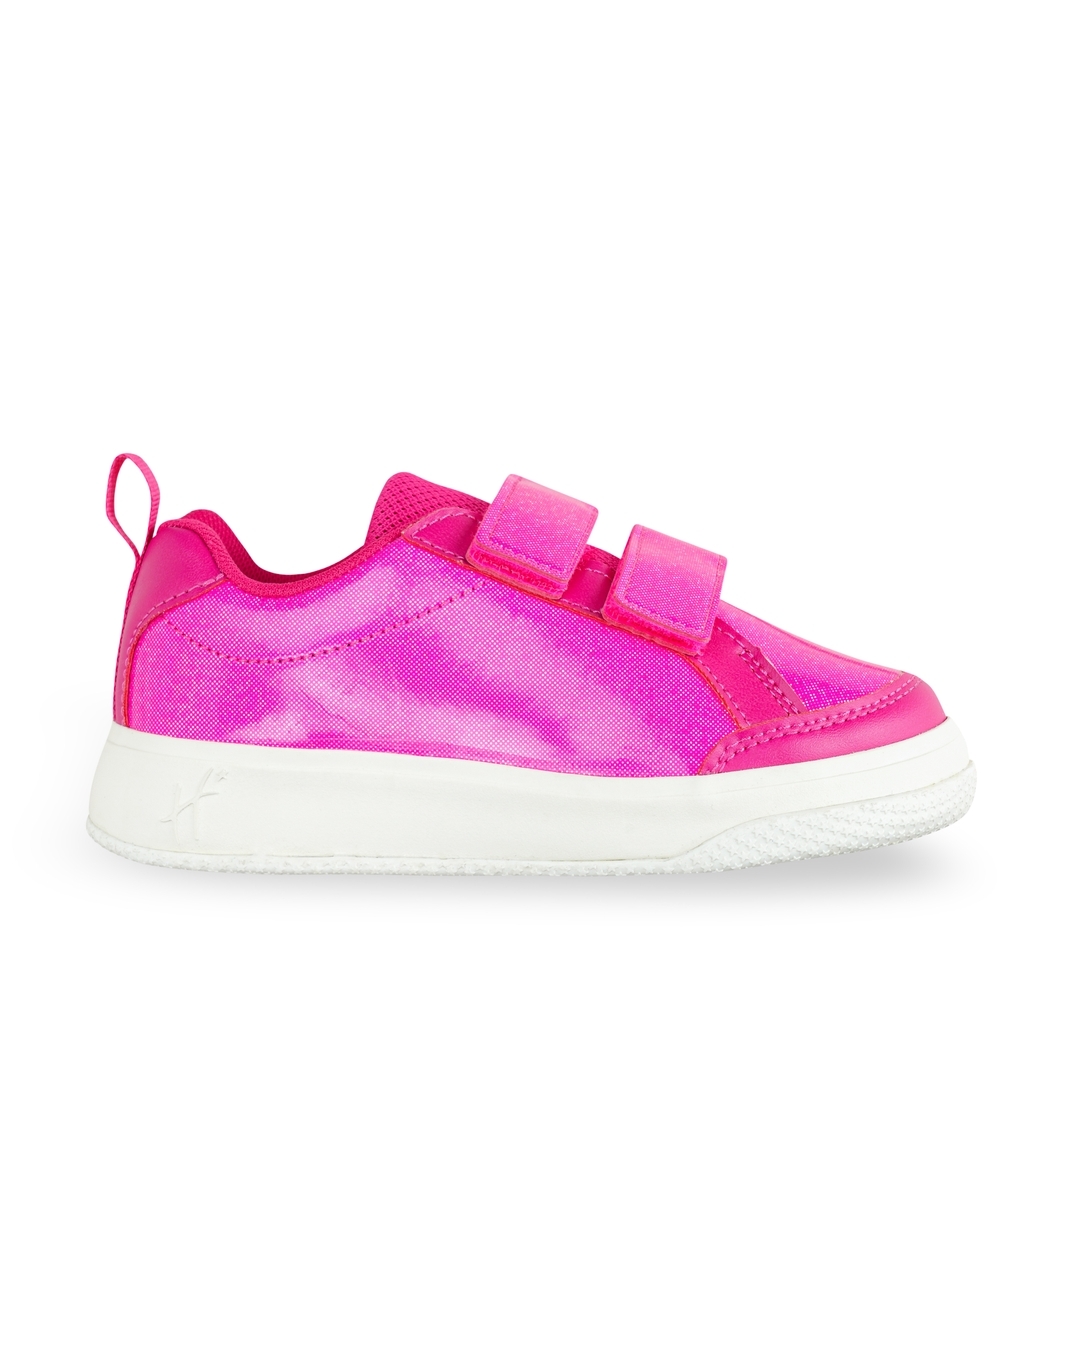 Sneaker High Top Girl Children | High Spring Sneakers Girls - Girls New  Running Shoes - Aliexpress